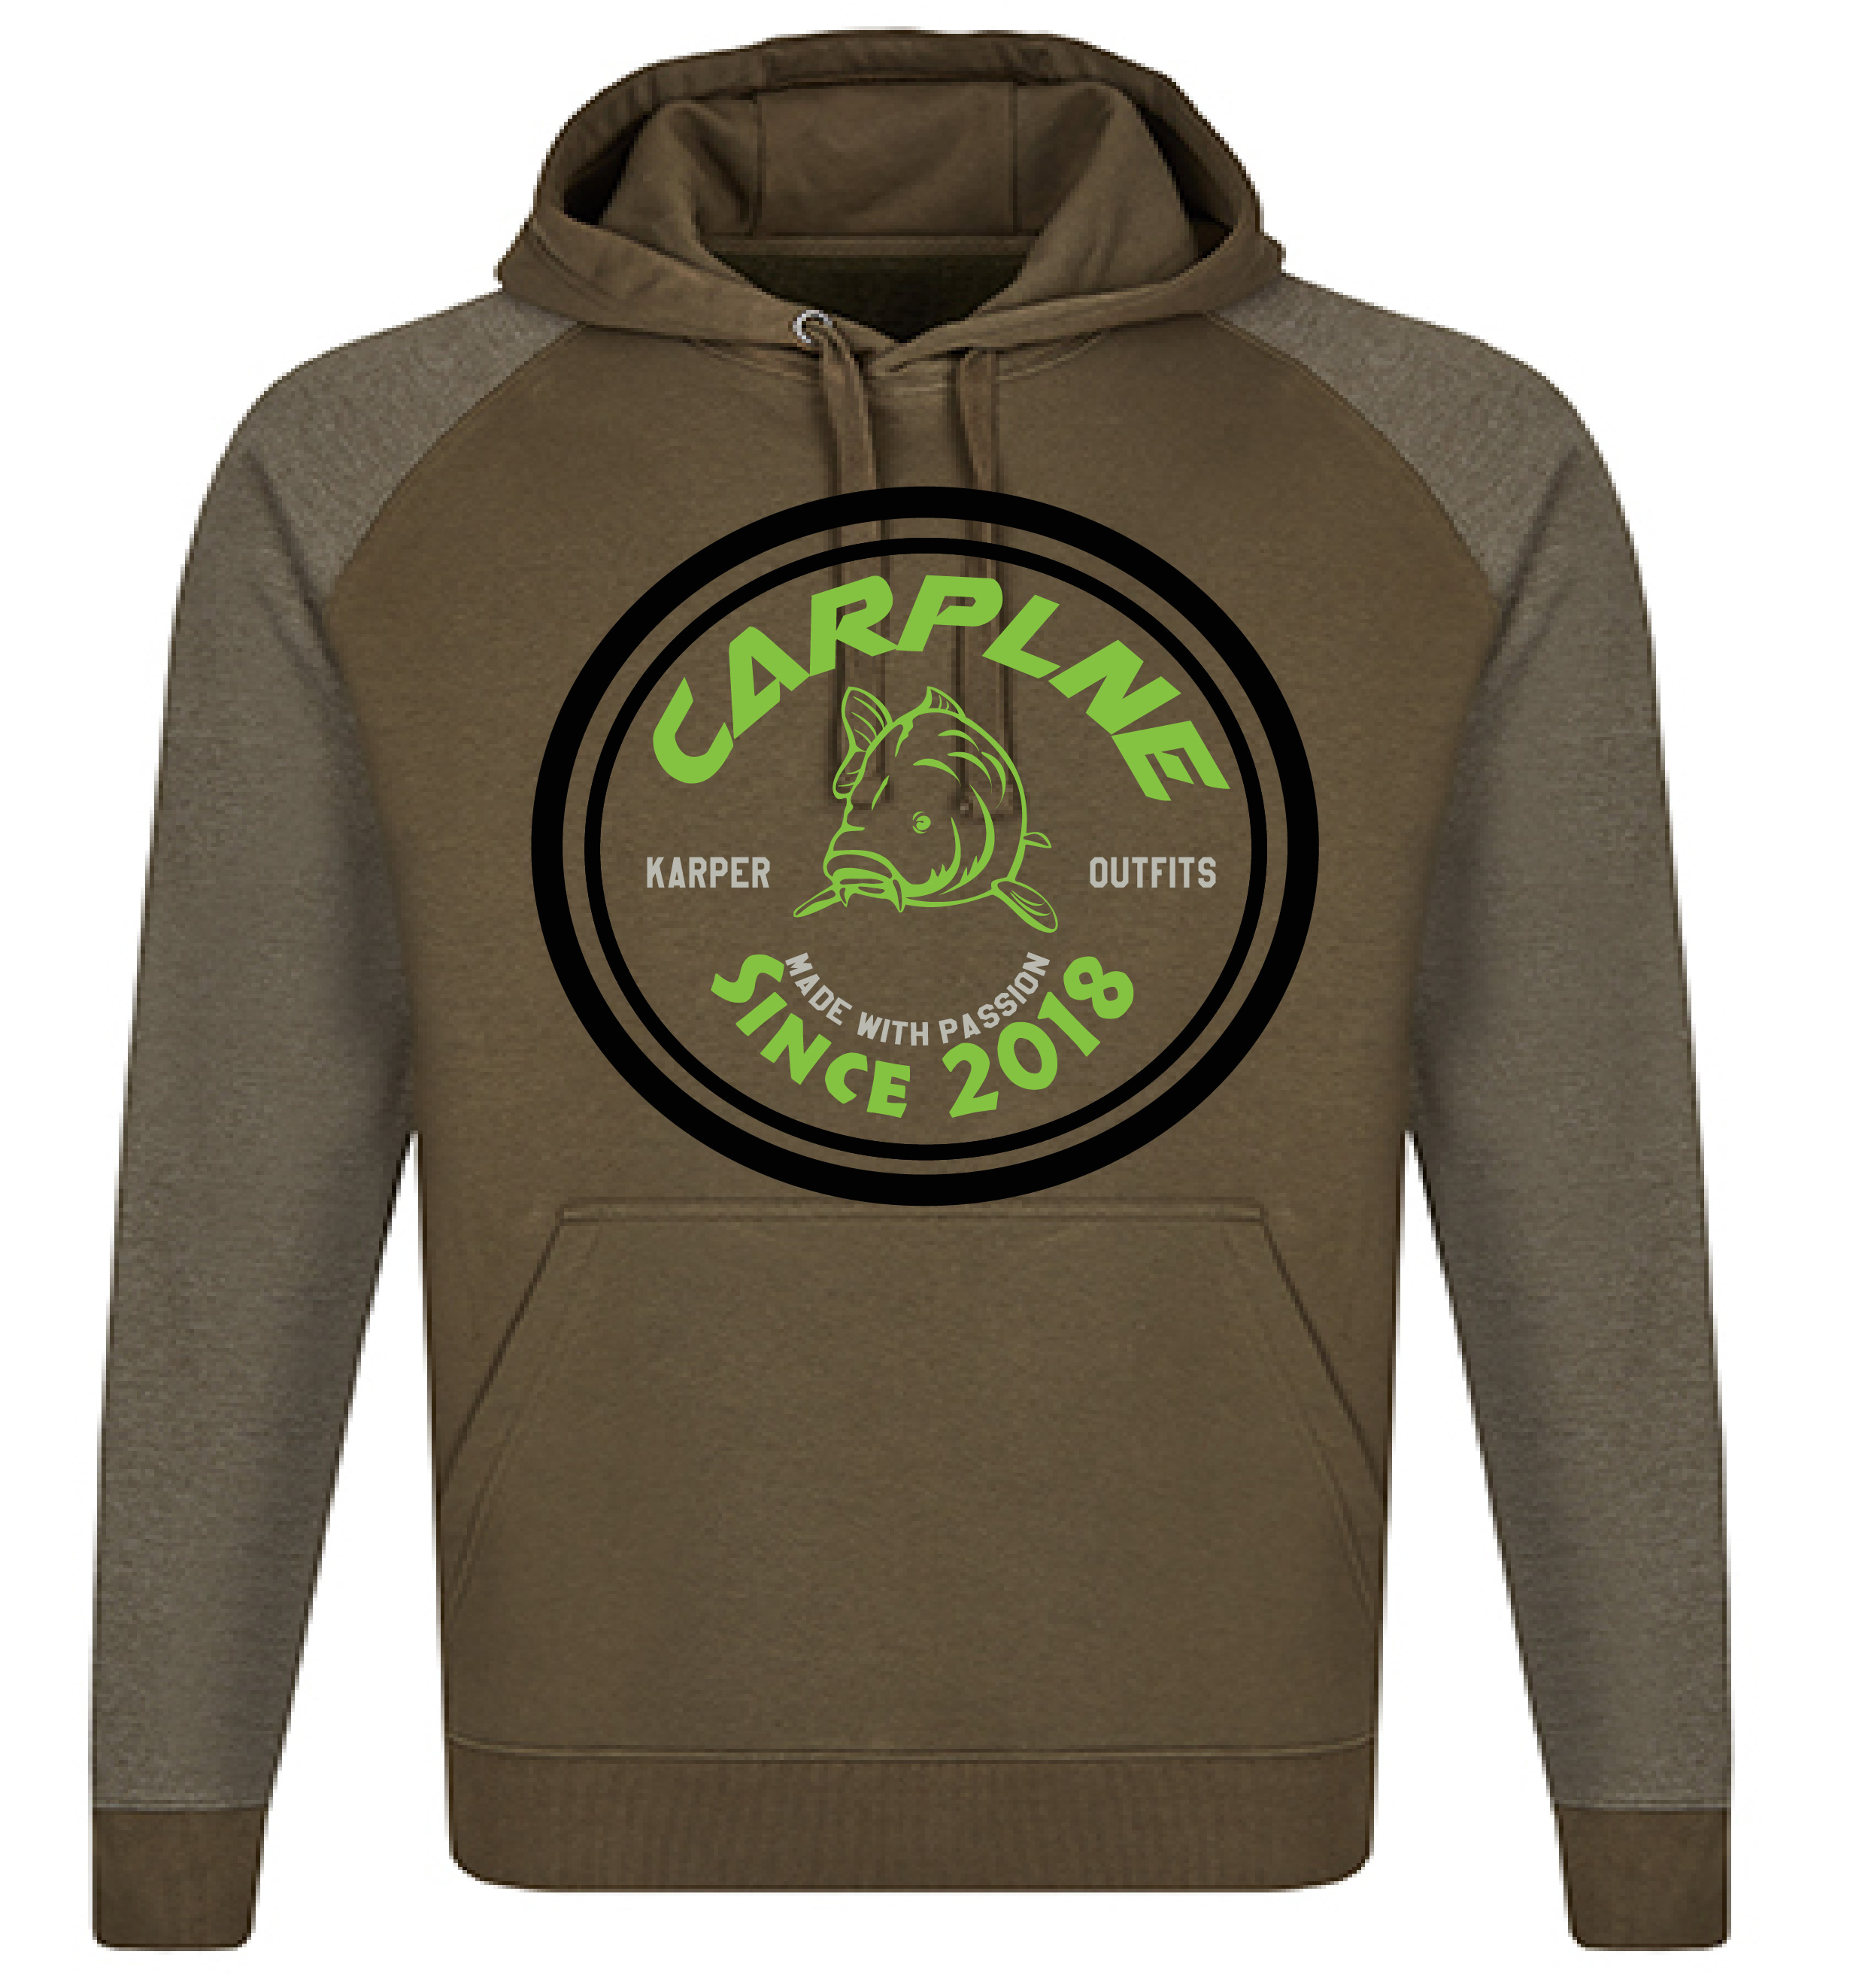 Je bekijkt nu Nieuwe hoodie’s, crewnecks en t-shirts met nieuw logo